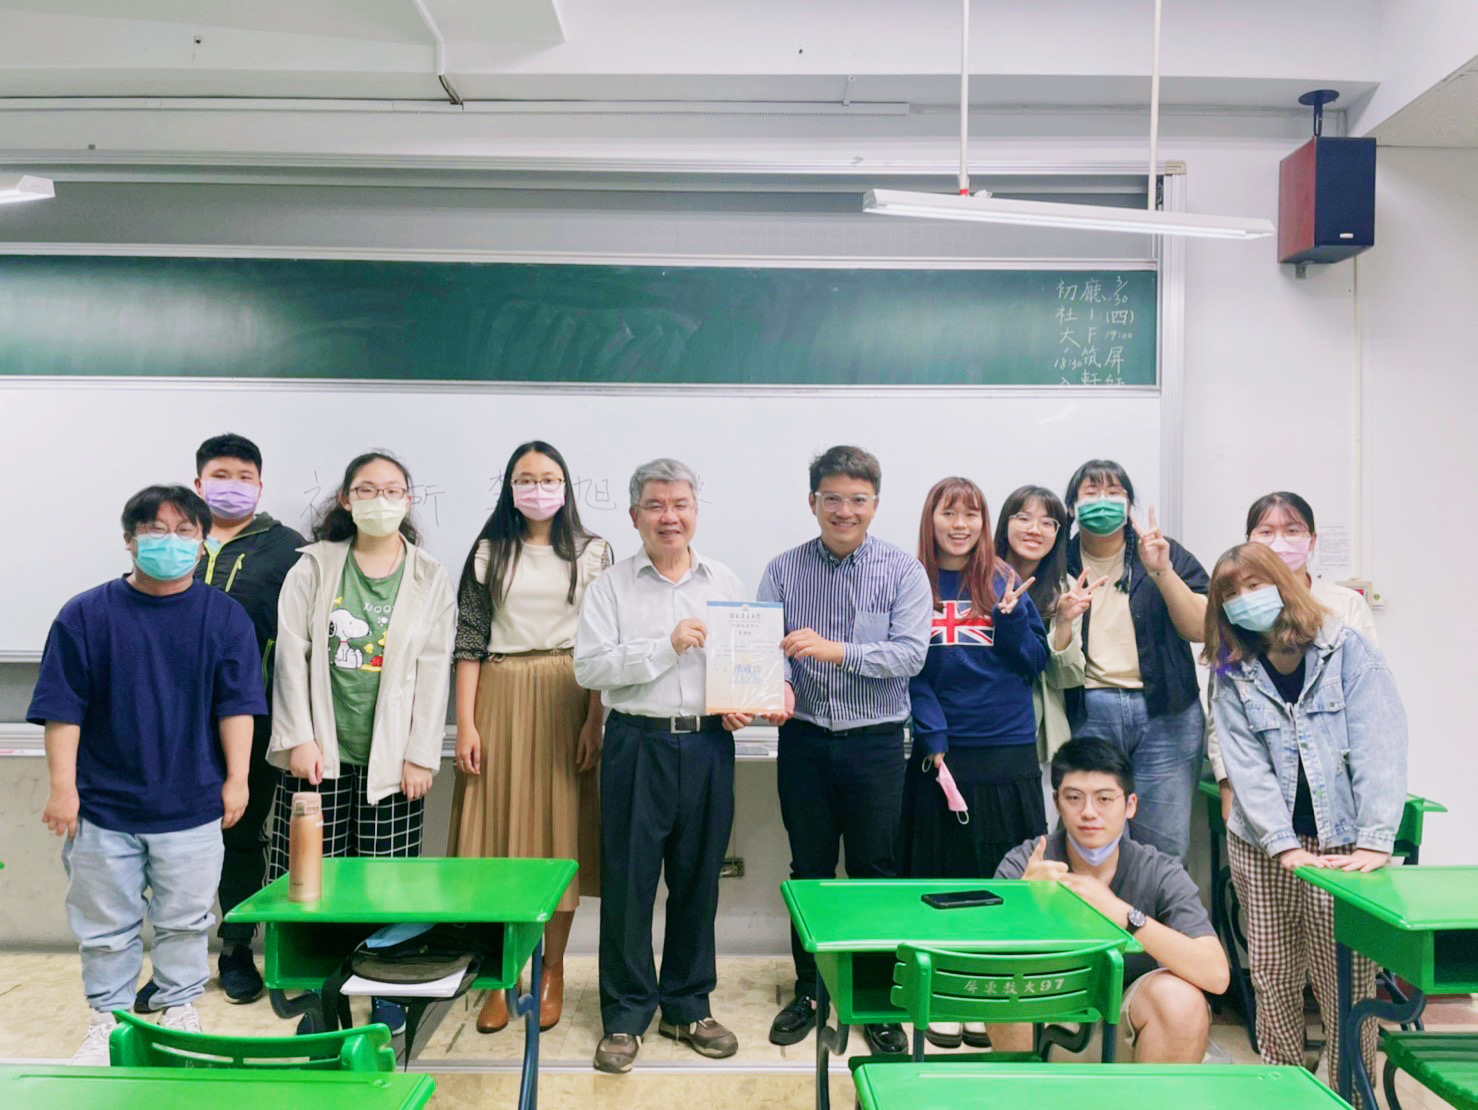 因應多元化的學生，師資培育多元化，提升台灣教育競爭力